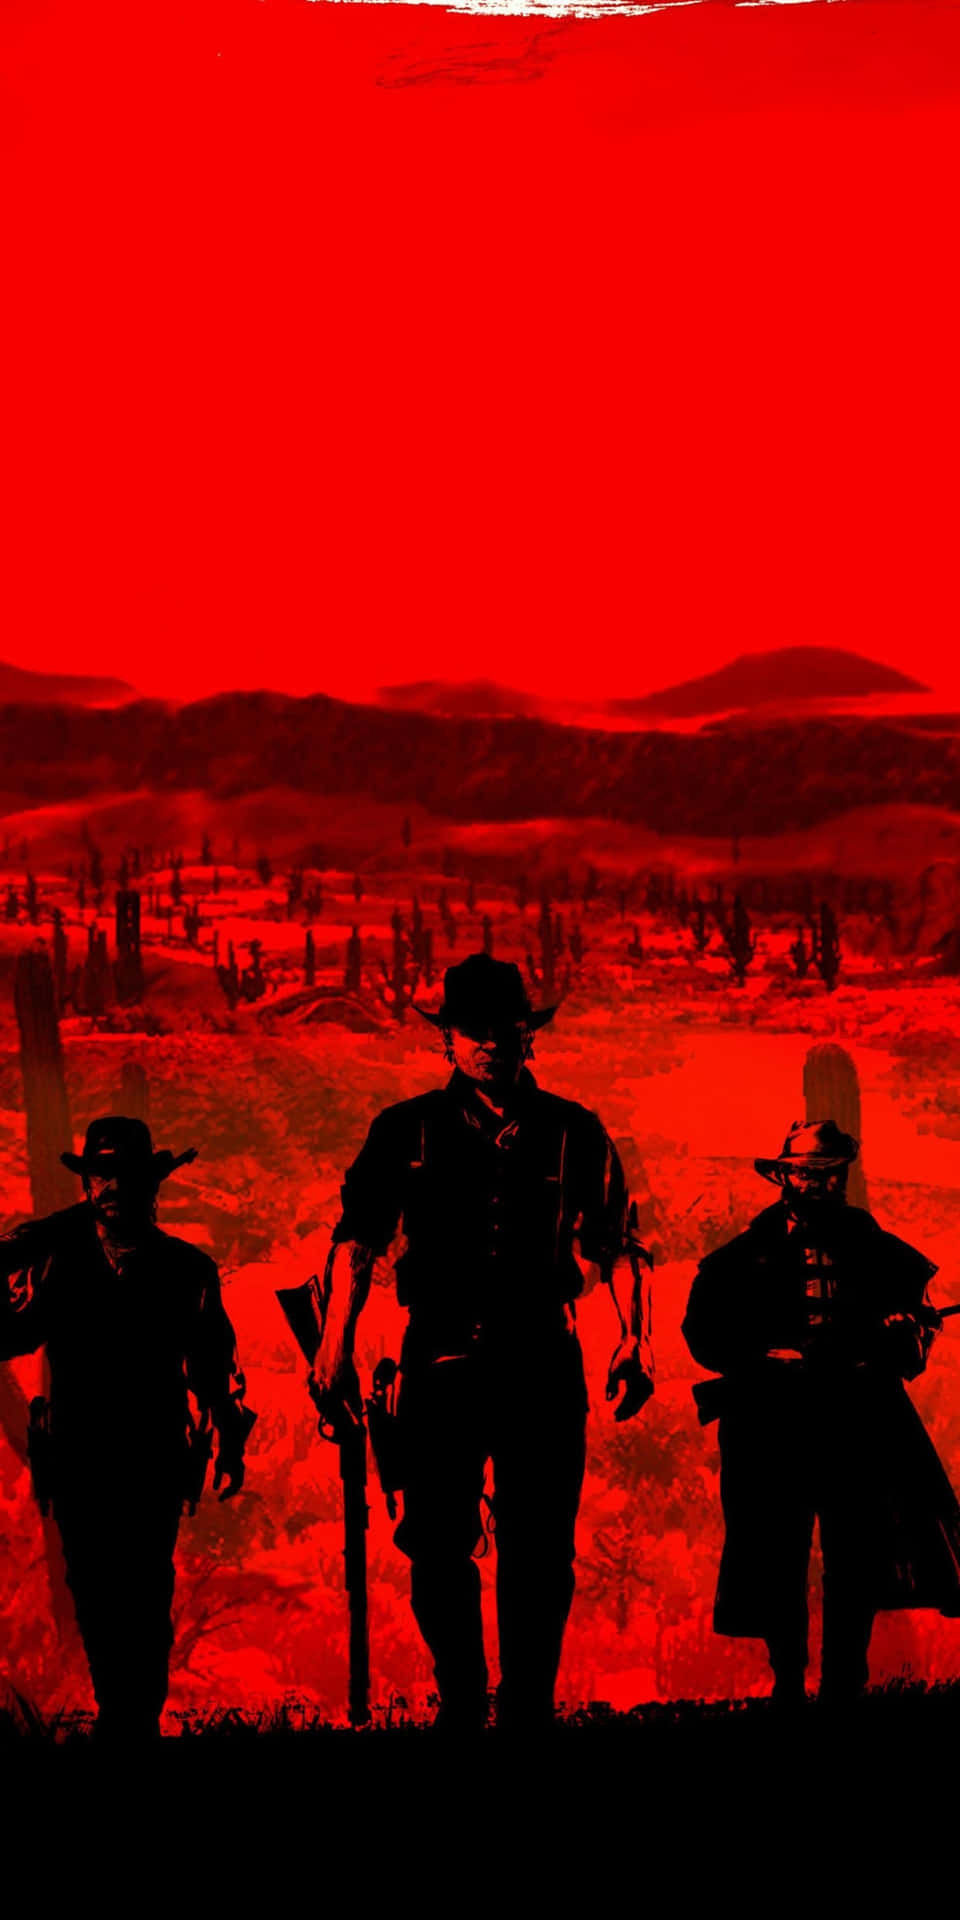 Fondode Pantalla De Pixel 3 Red Dead Redemption 2 Con Temática Roja Y Póster De Vaqueros.